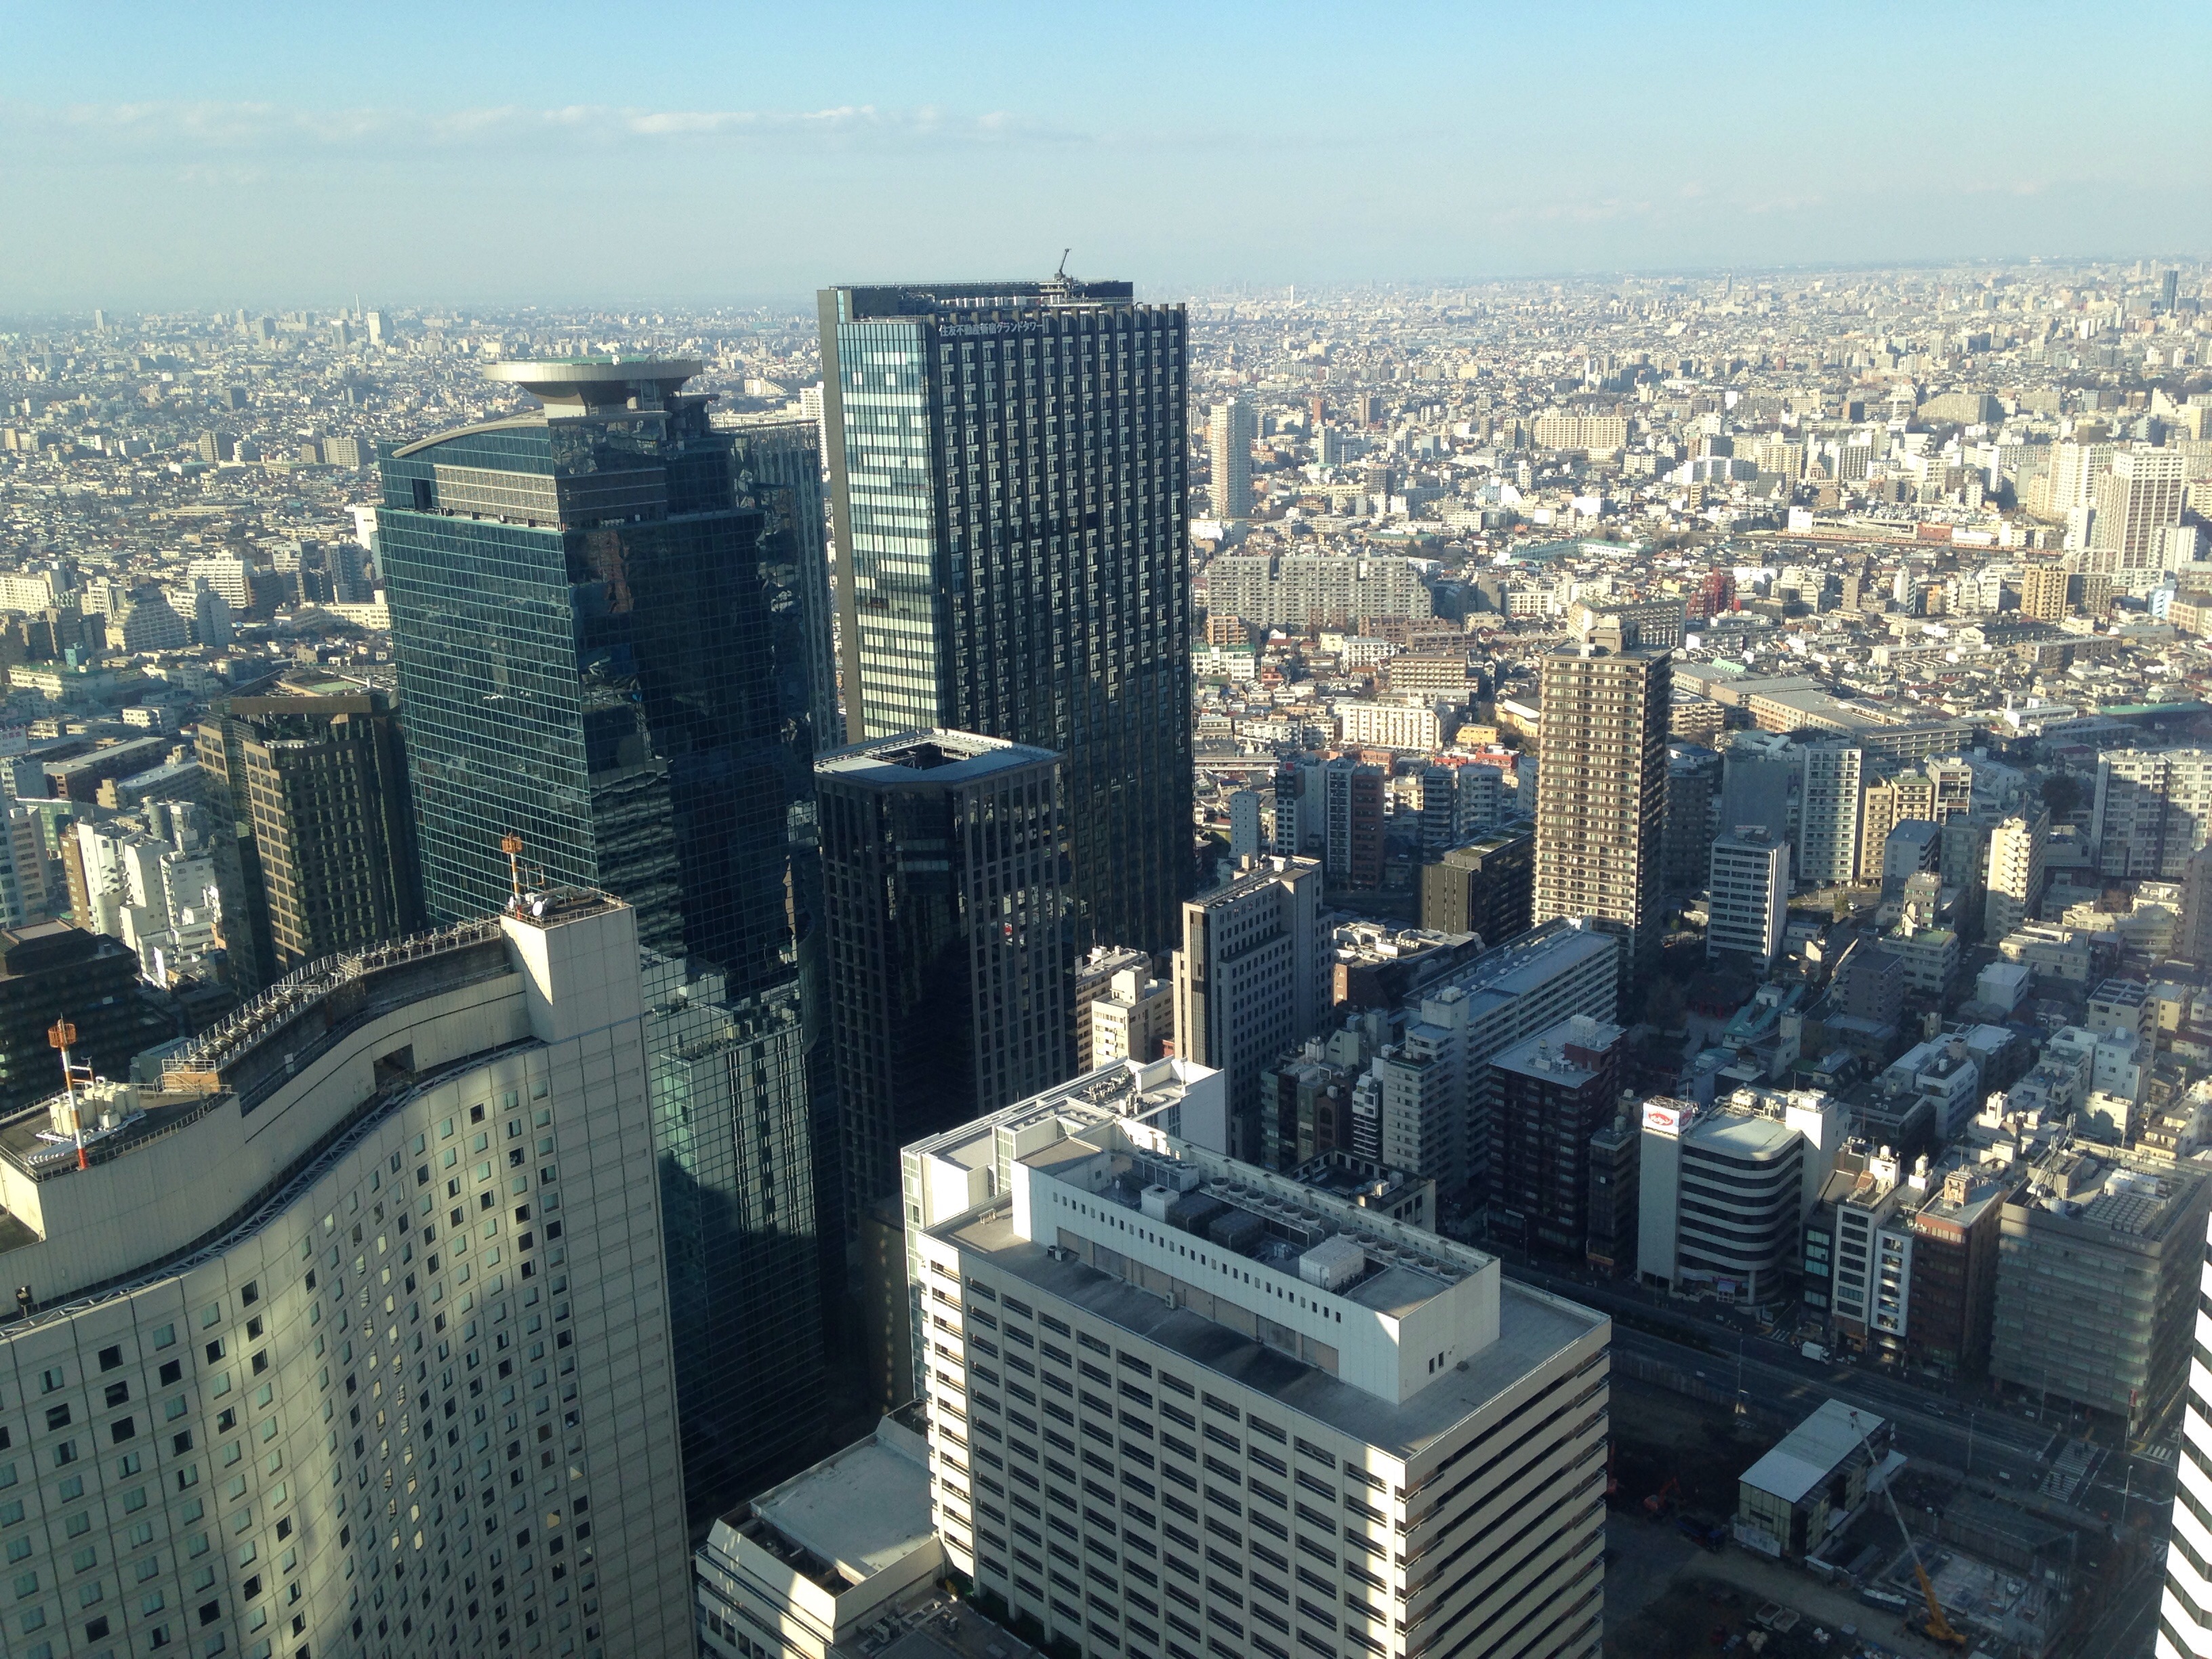 ぐっちぃ 新宿の高層ビル51階からの景色 なかなか高いです笑 ぐっちぃの卓球活動日記 Wrm